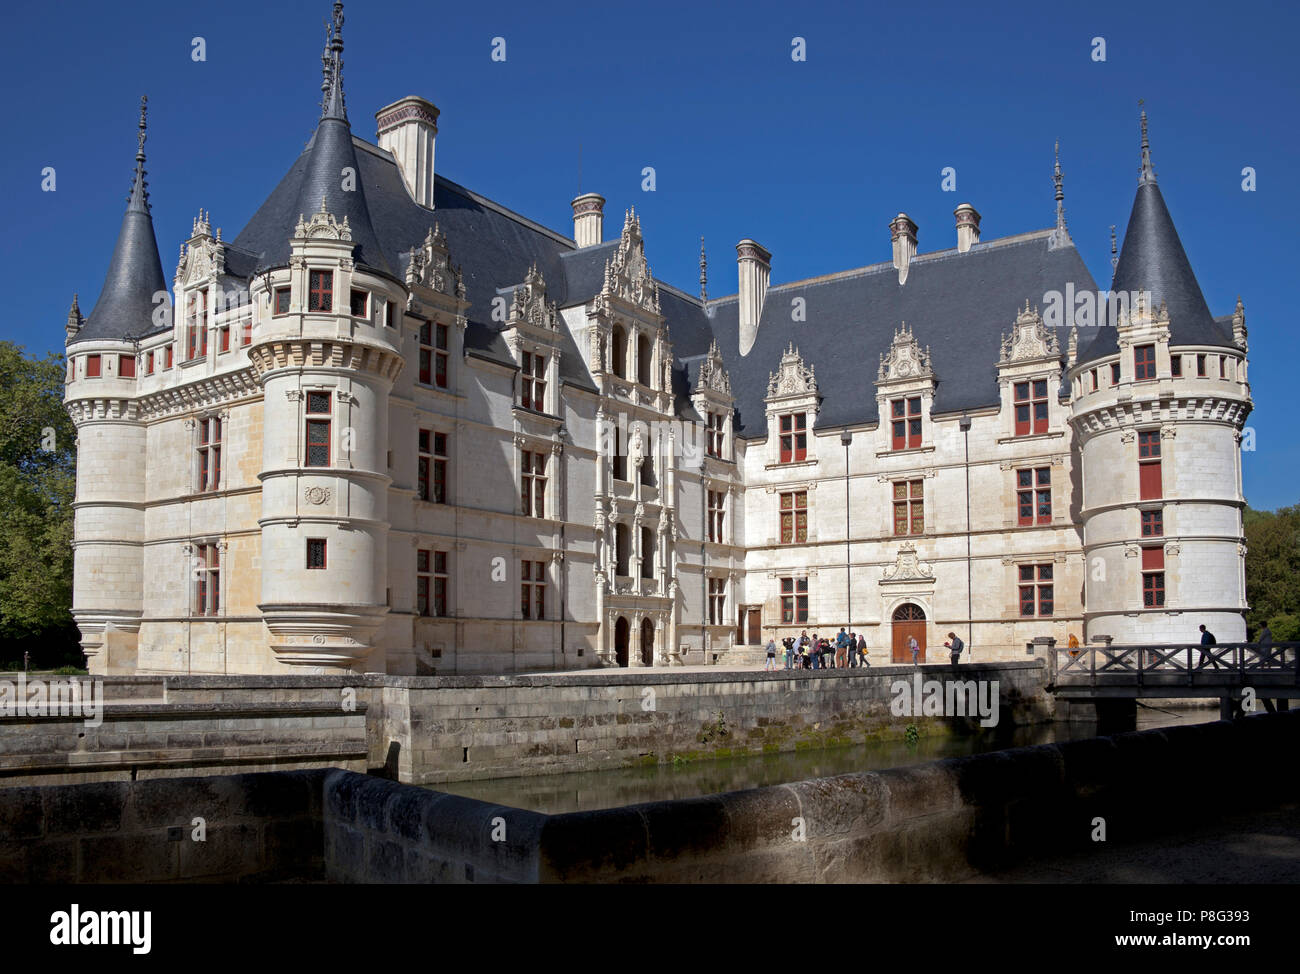 Azay Le Rideau chateau, Indre-et-Loire department, France, Europe Stock Photo